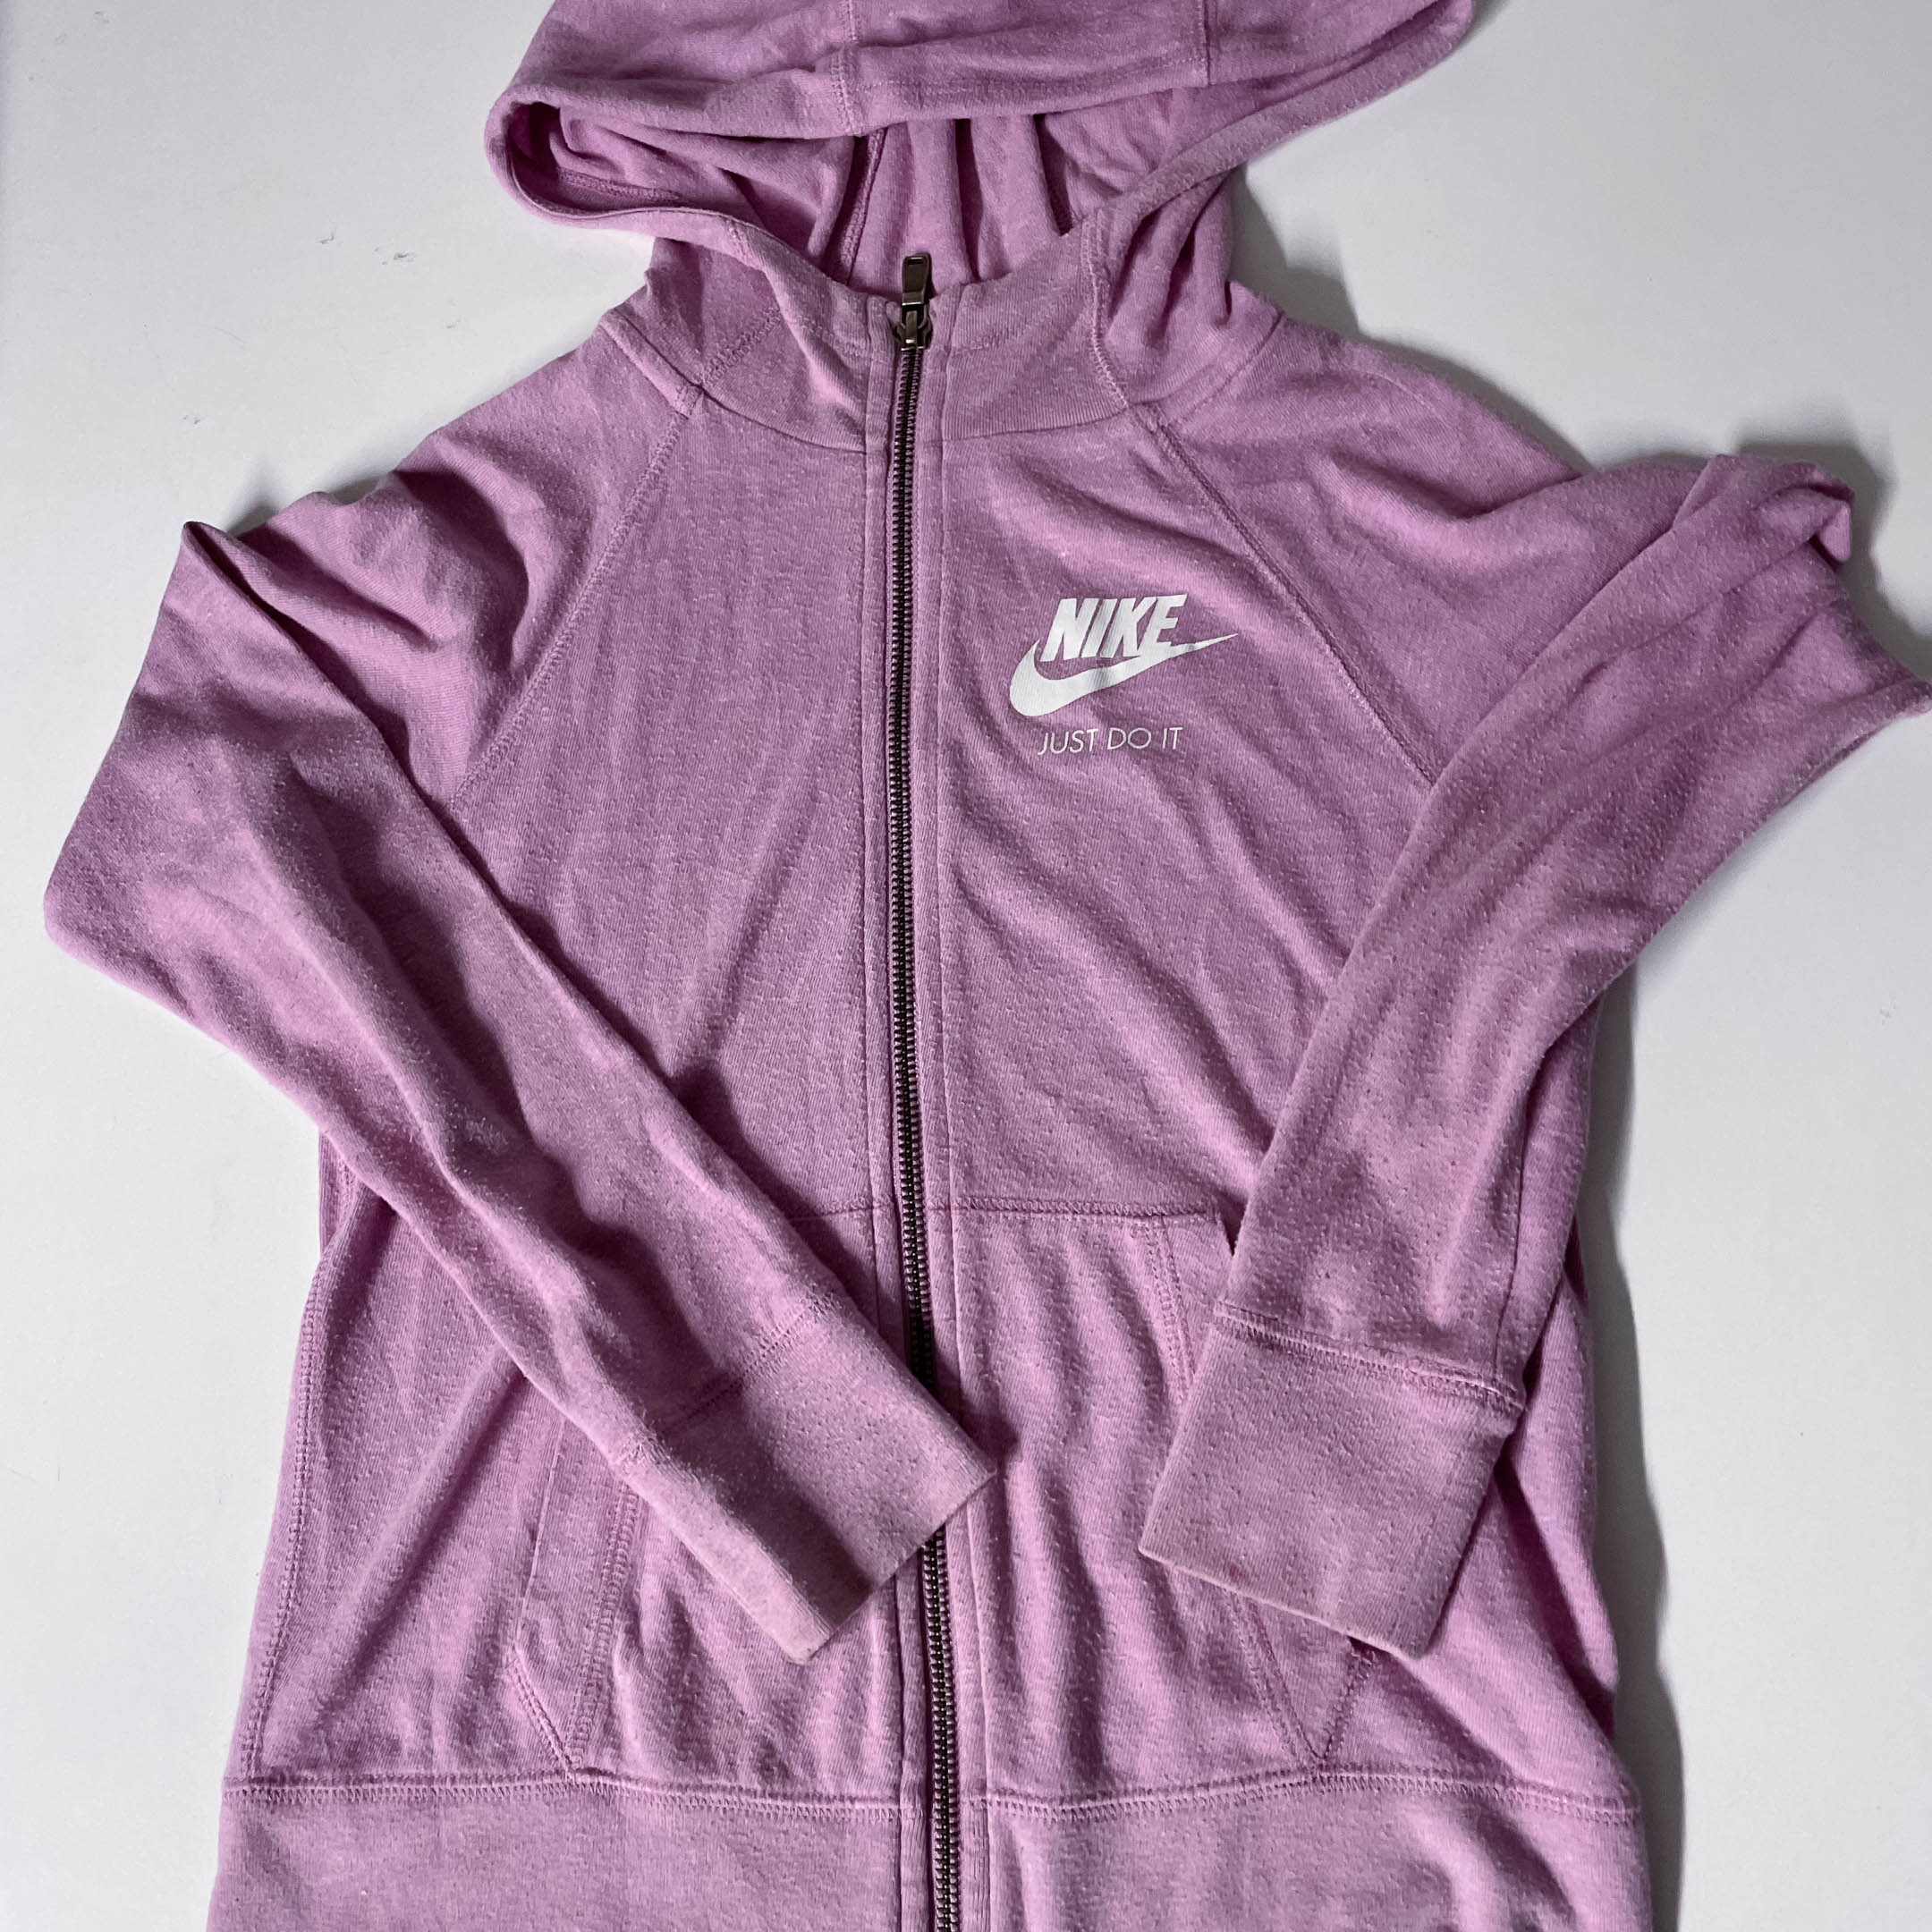 Vintage purple Nike just do it medium regular fit full zip up hoodie